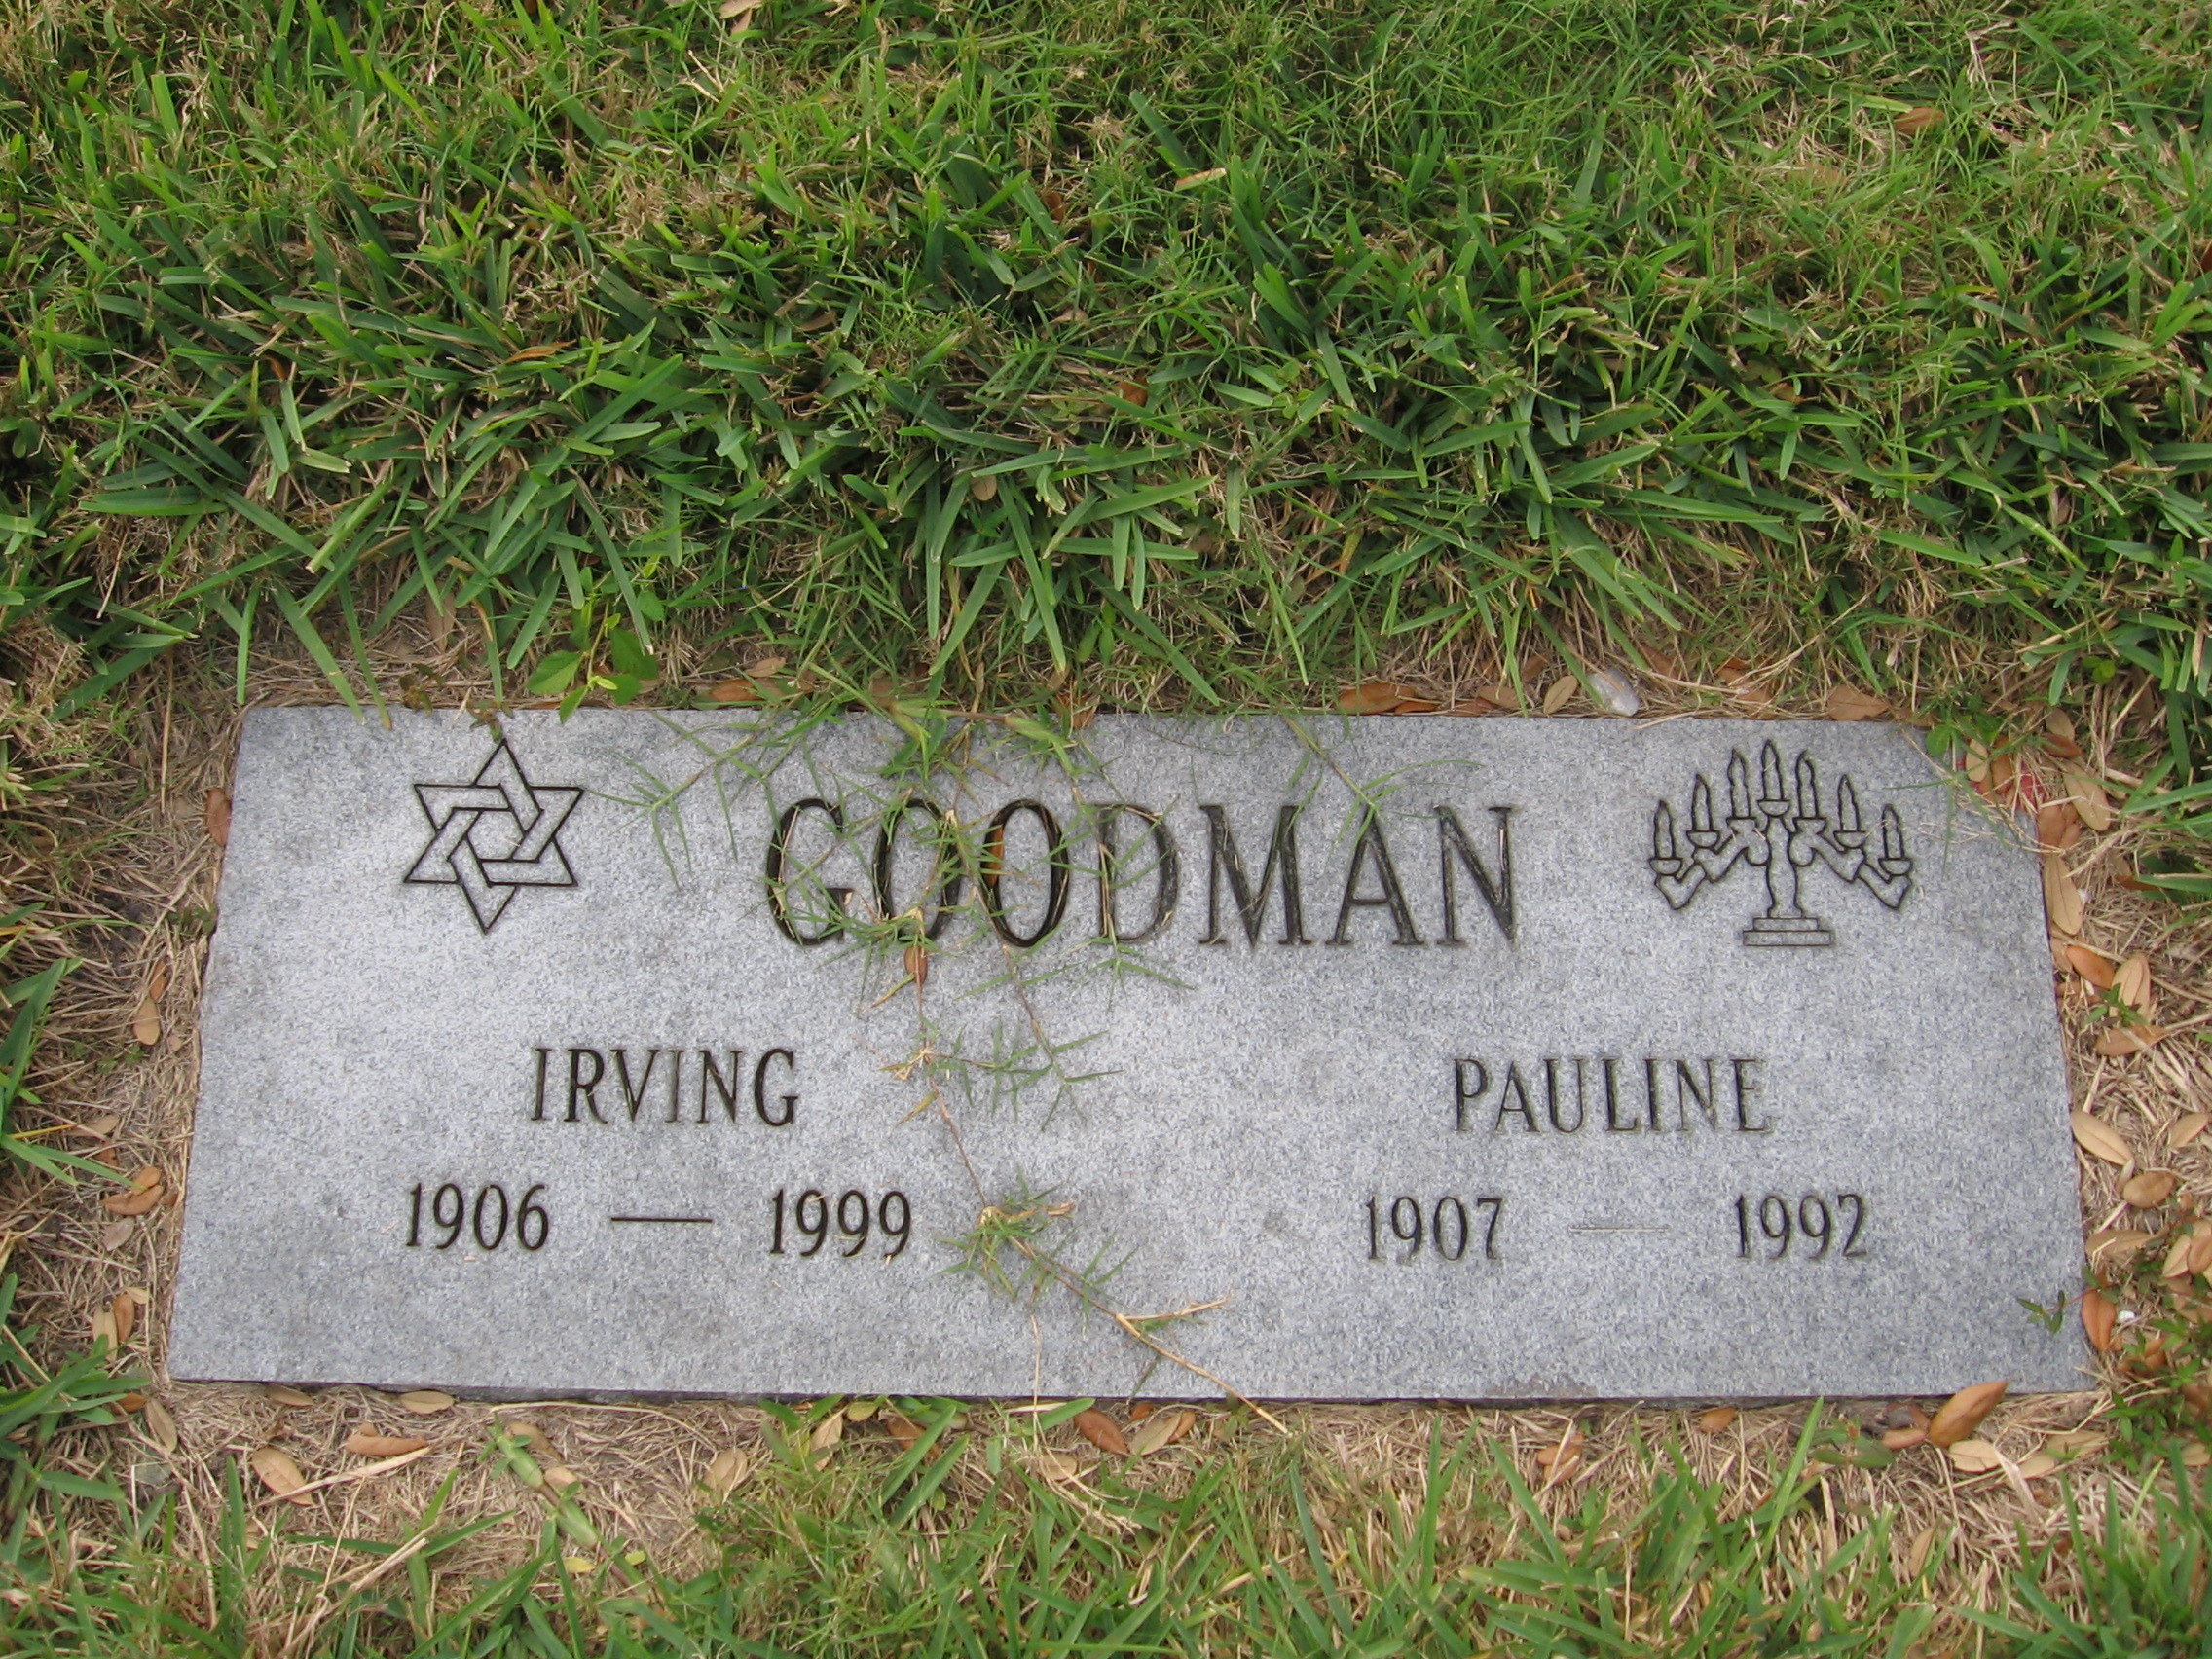 Irving Goodman